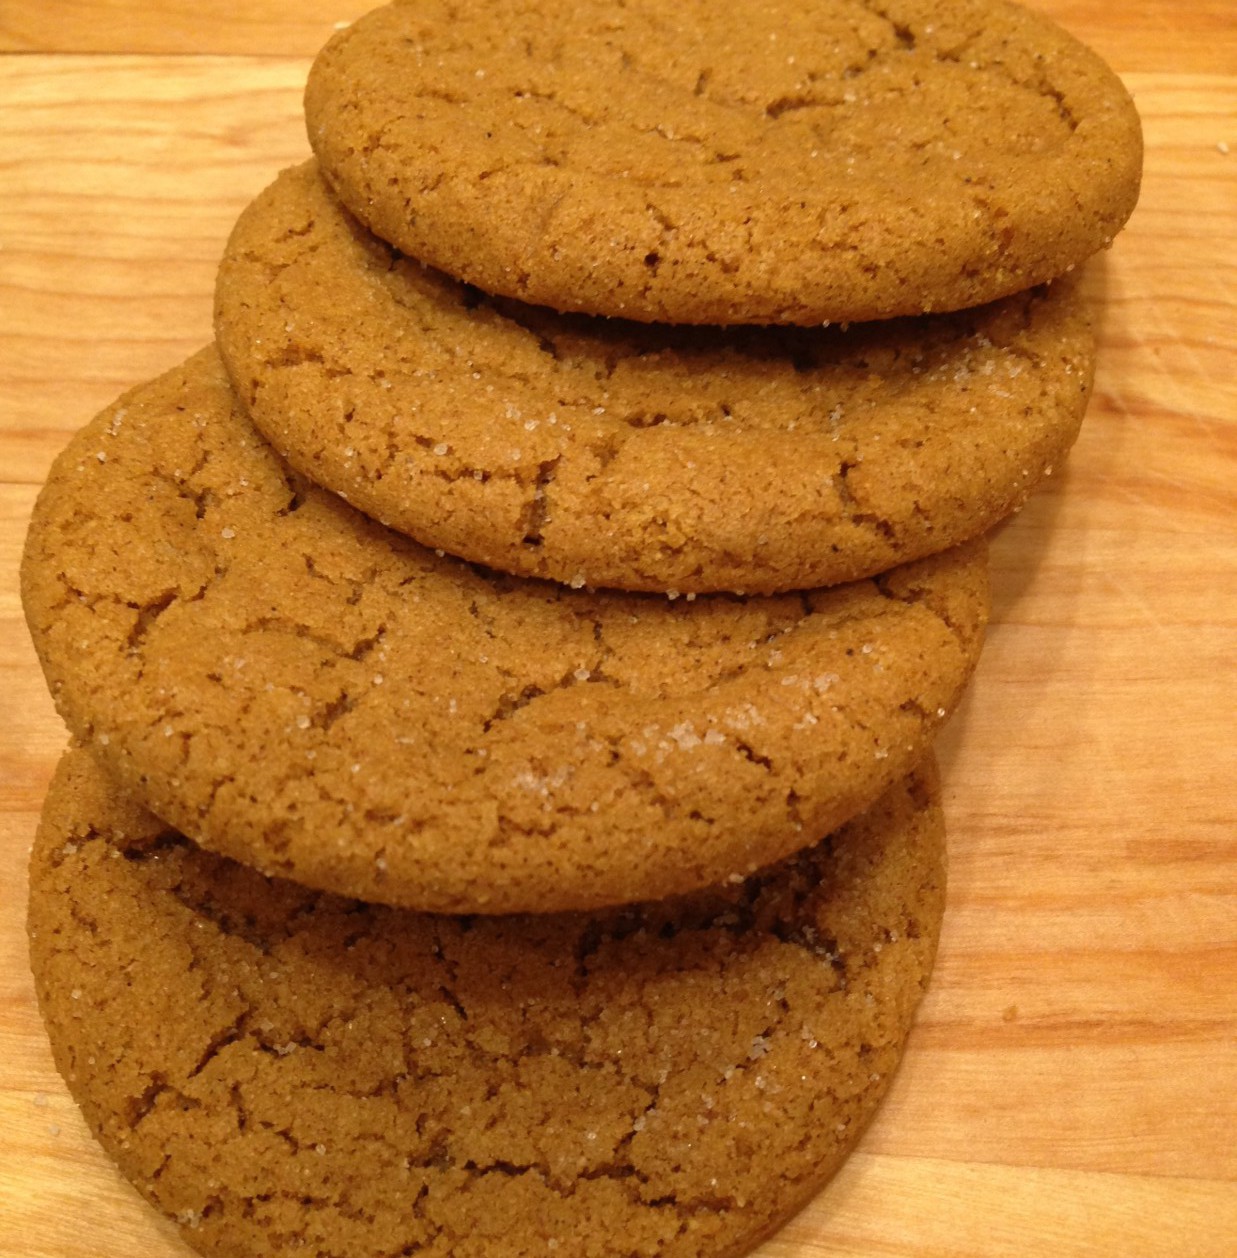 Molasses clove cookies from Dancing Deer in Boston. (Emma-Jean Weinstein/WBUR)